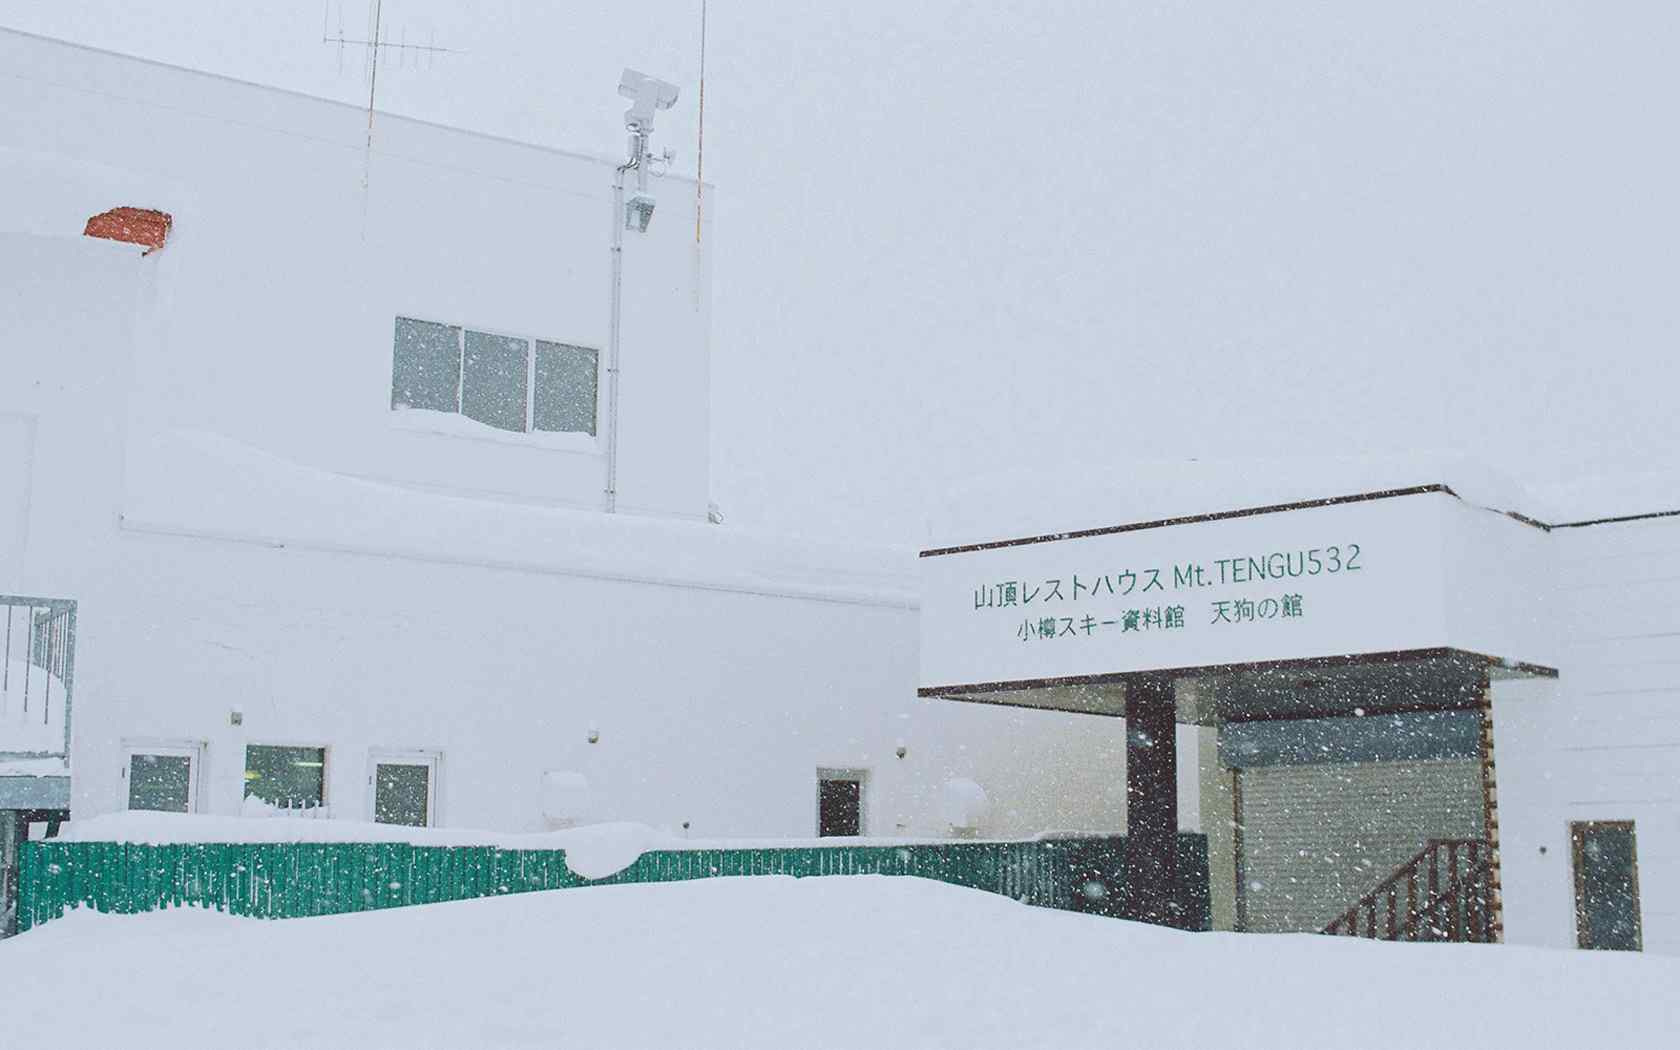 唯美的日本北海道雪景图片桌面壁纸